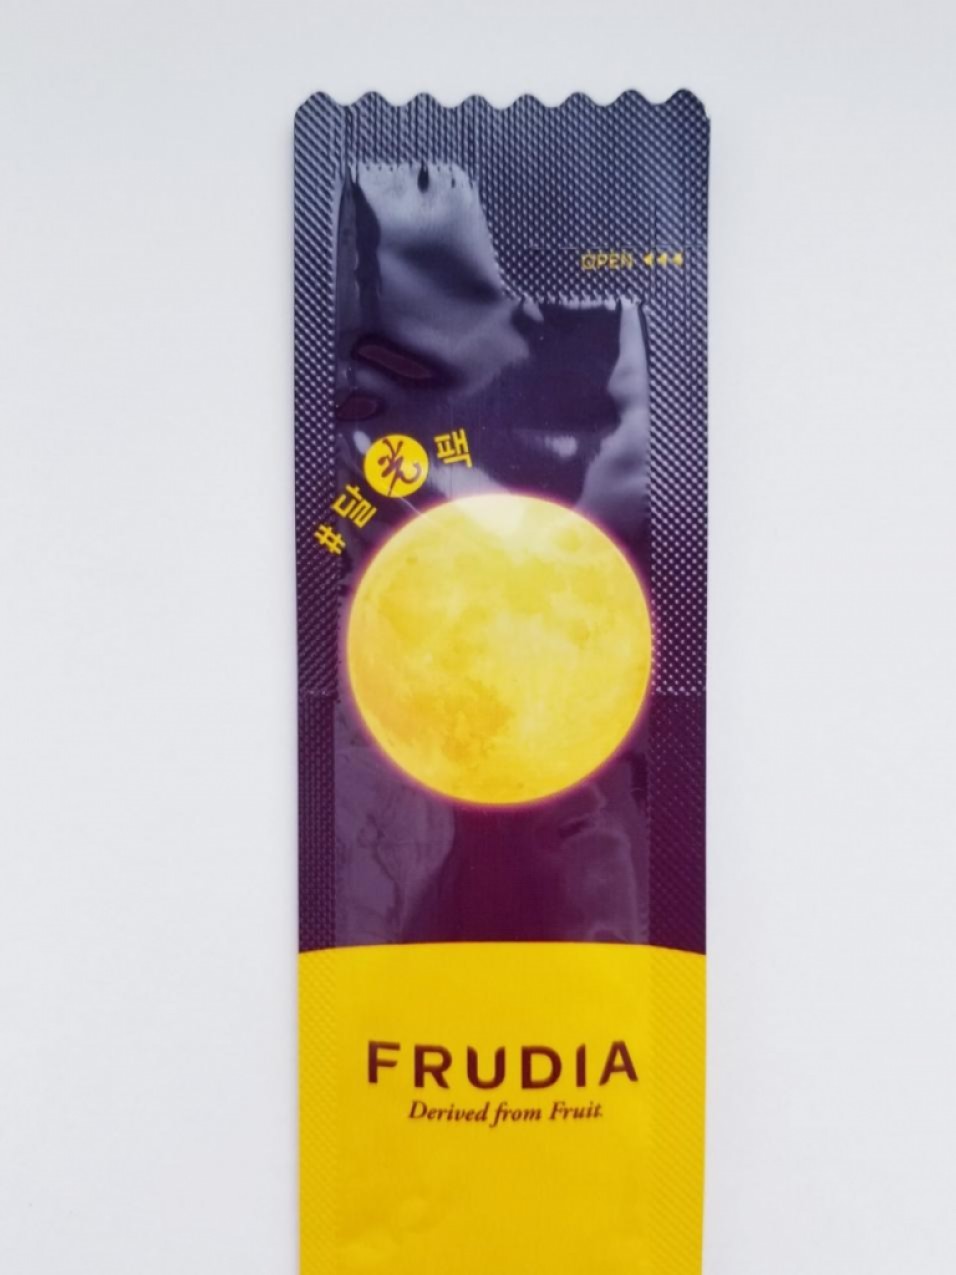 Frudia Blueberry Honey Overnight Mask Питательная ночная маска с черникой и мёдом